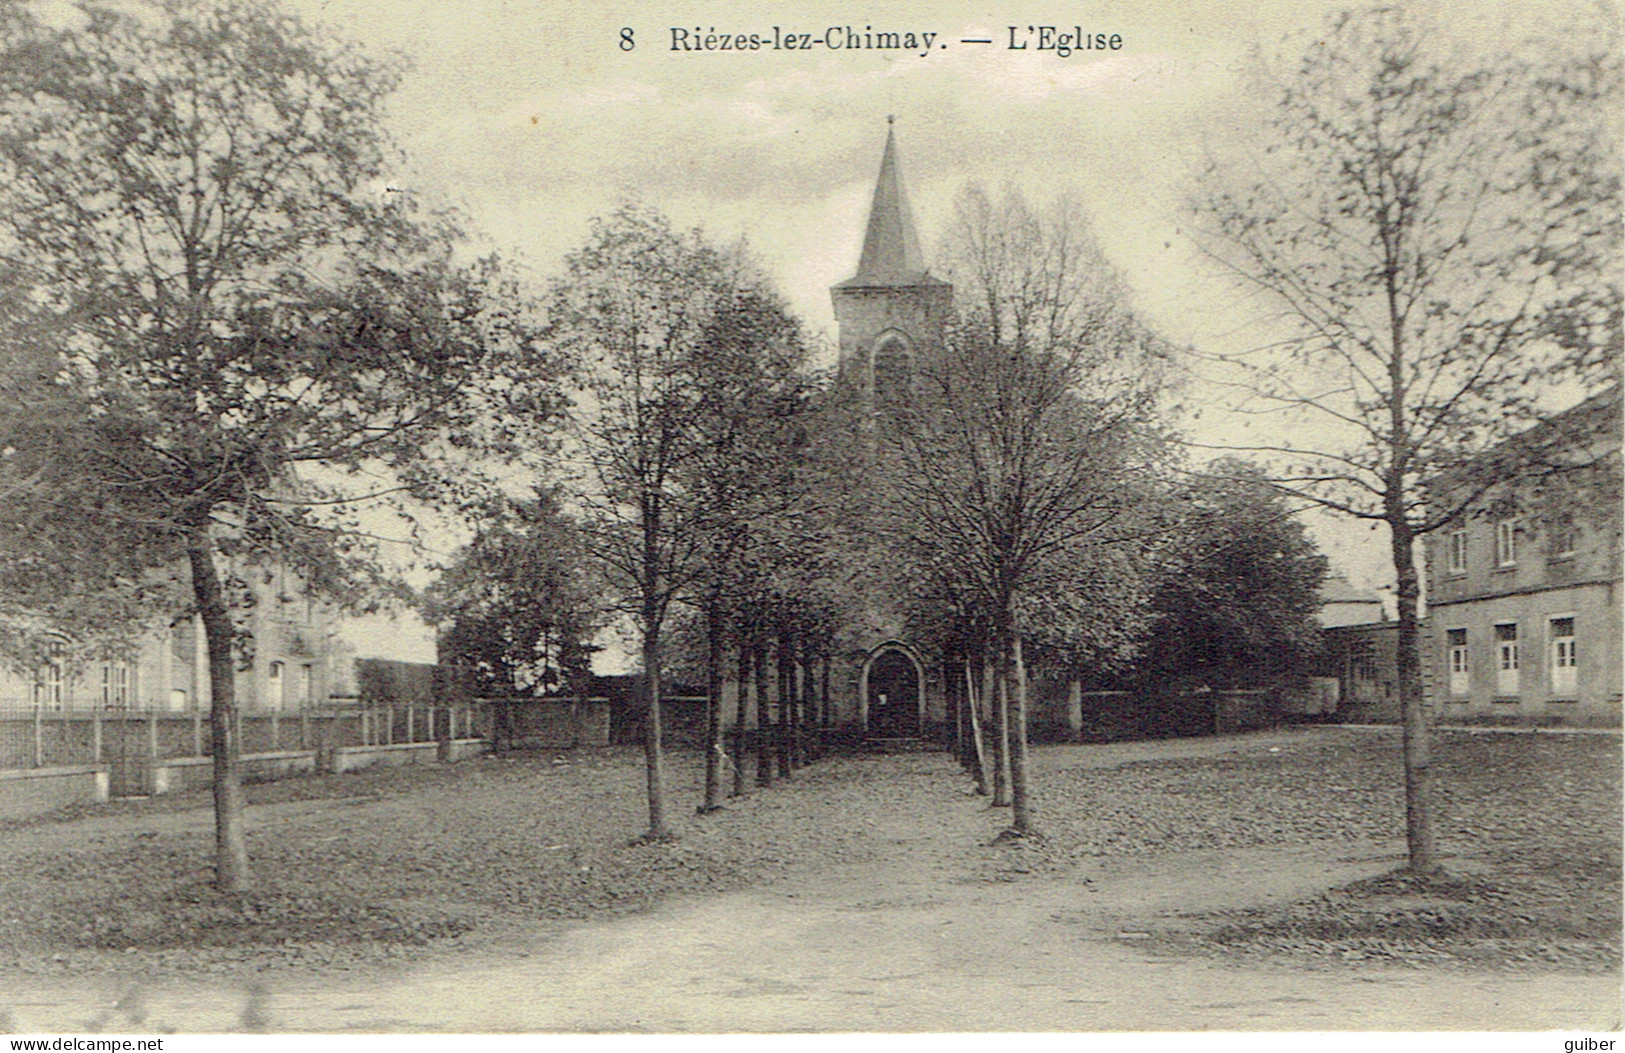 Riezes Lez Chimay L'église  E. Doumiau N° 8  Relais 1912 - Chimay